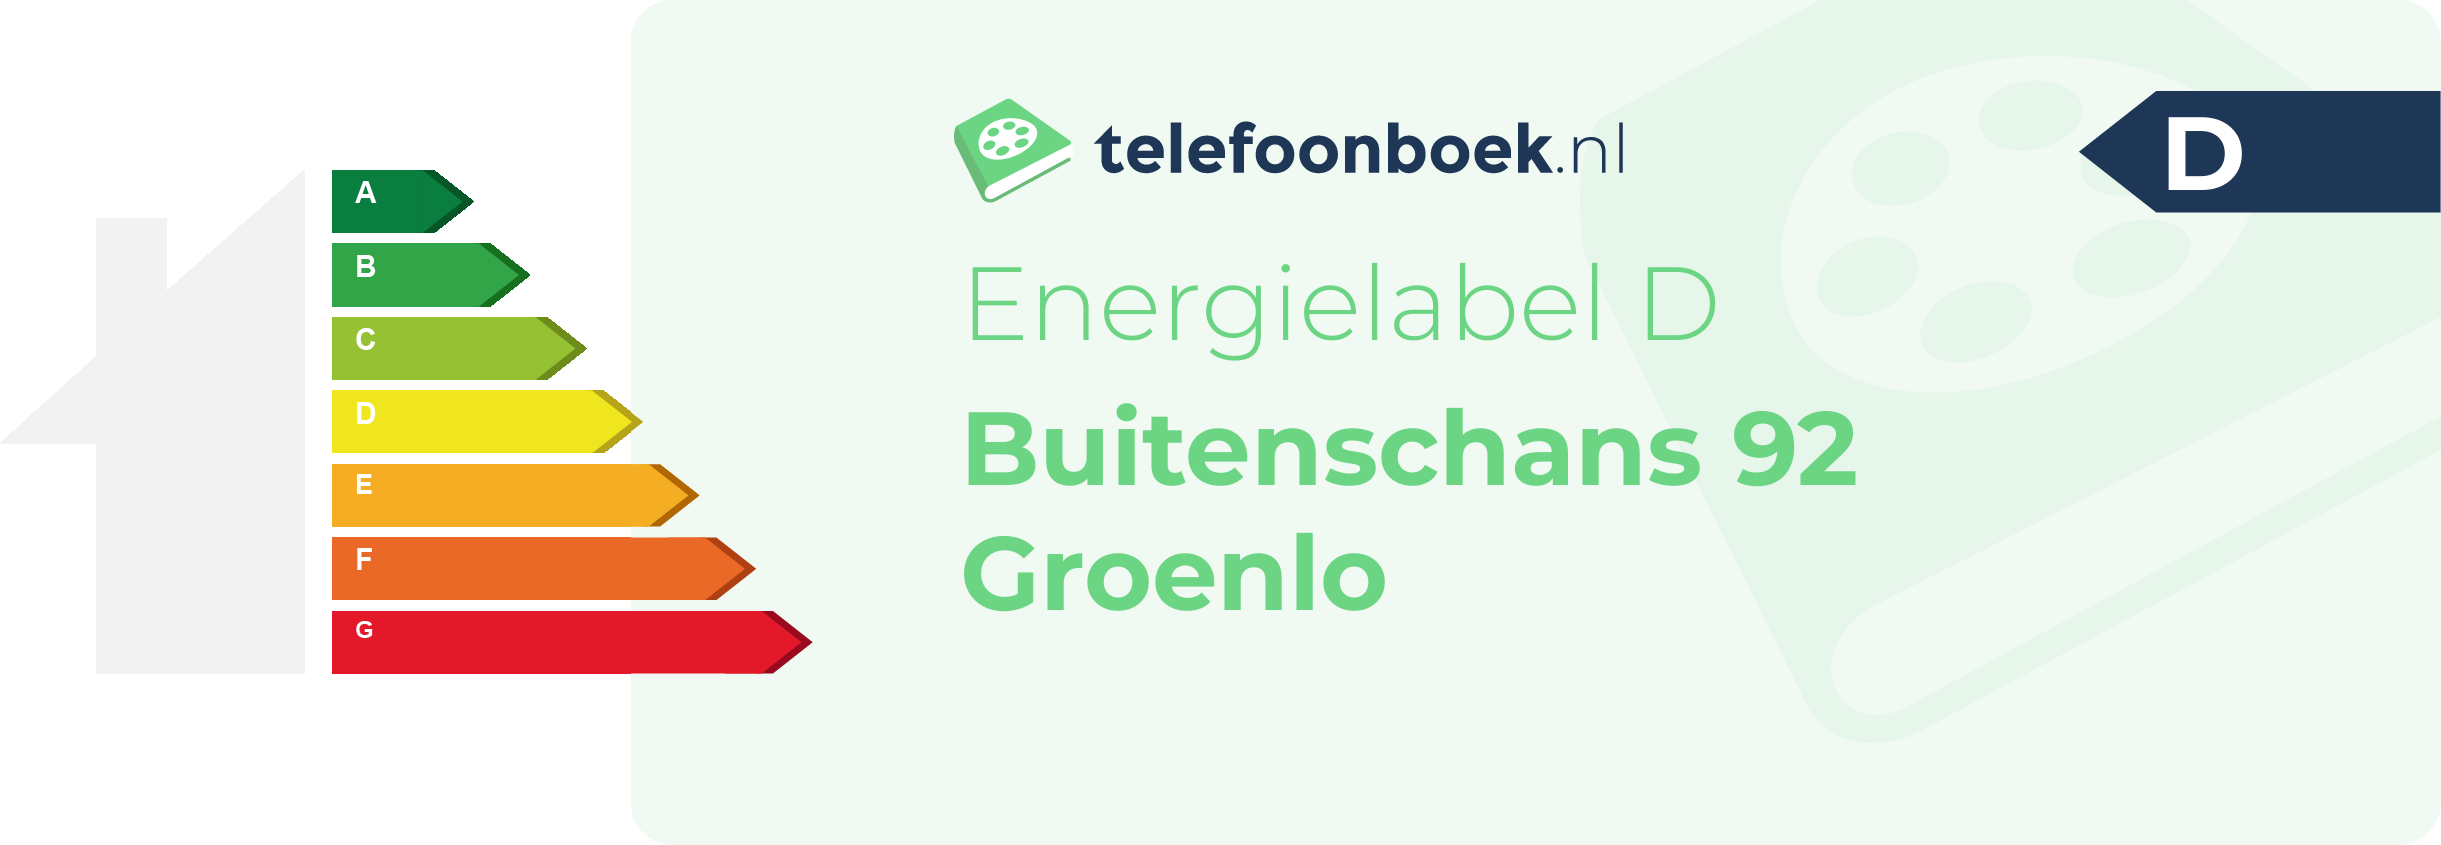 Energielabel Buitenschans 92 Groenlo